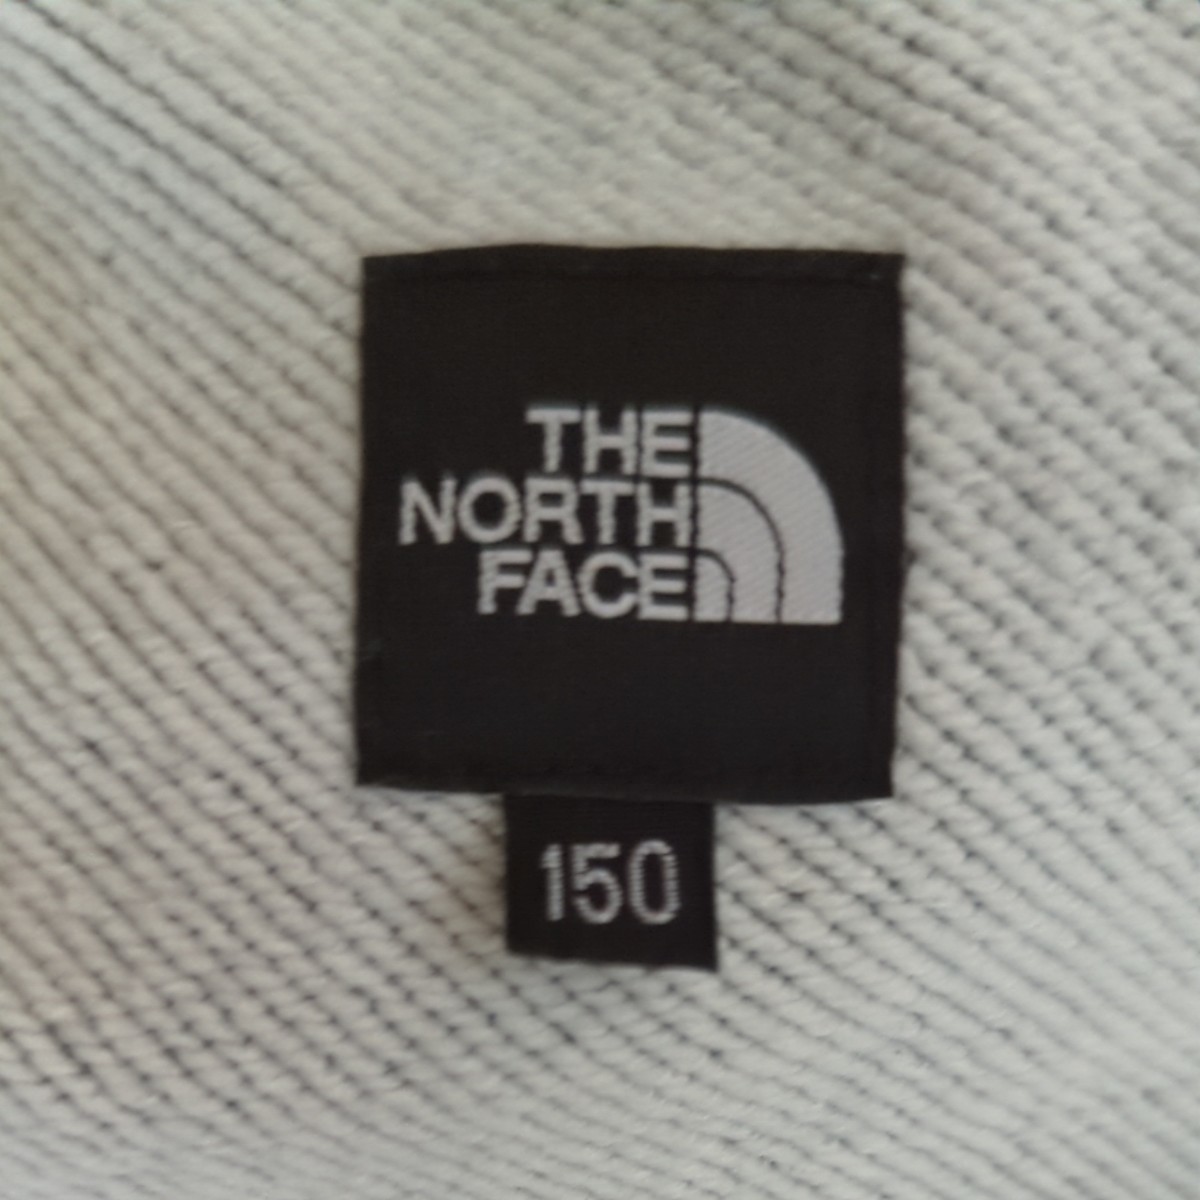 THE NORTH FACE　スウェットパンツ150